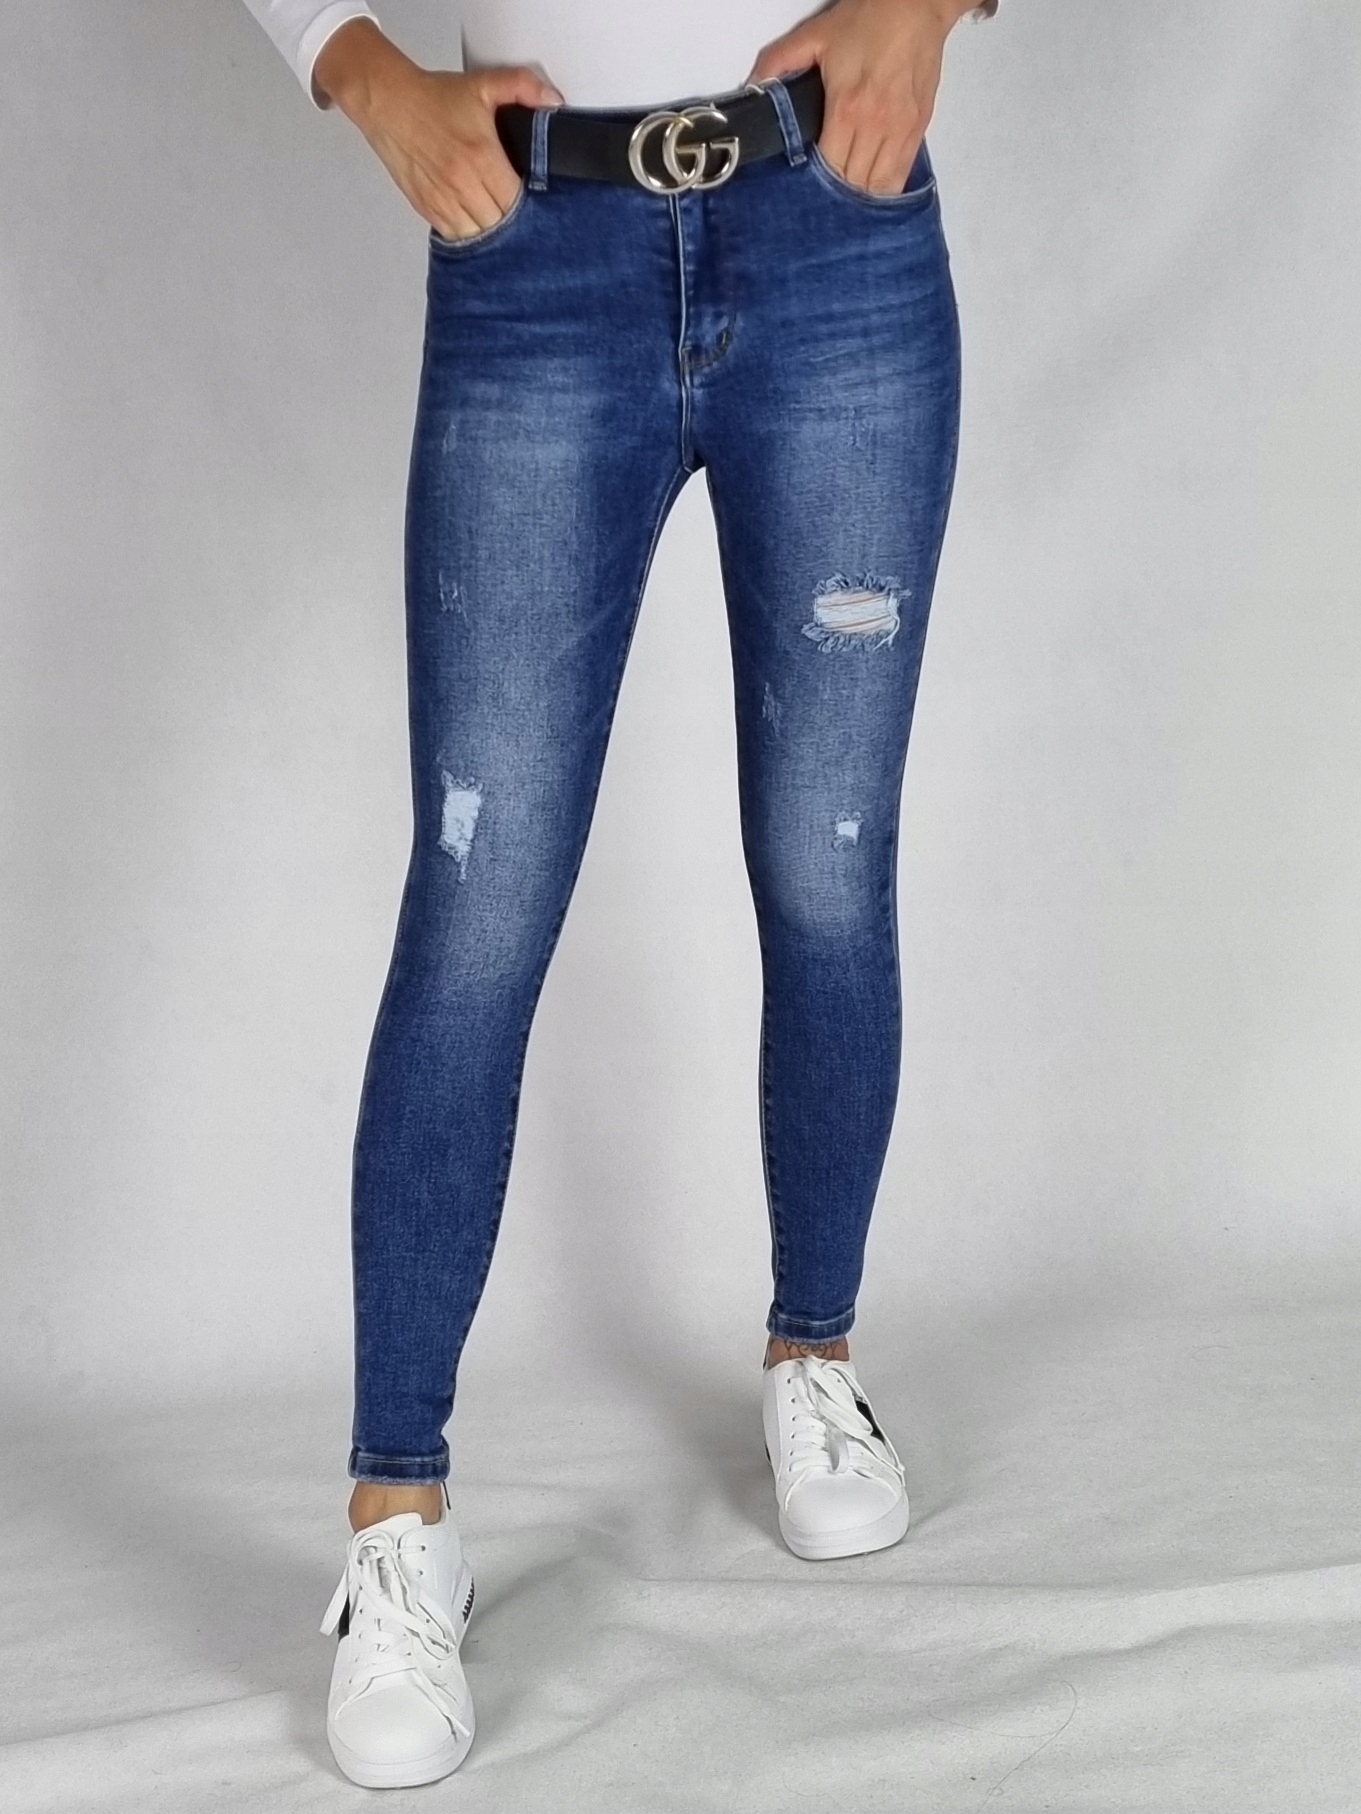 M. SARA джинсовые брюки с отверстиями размер 28 Leg Length long